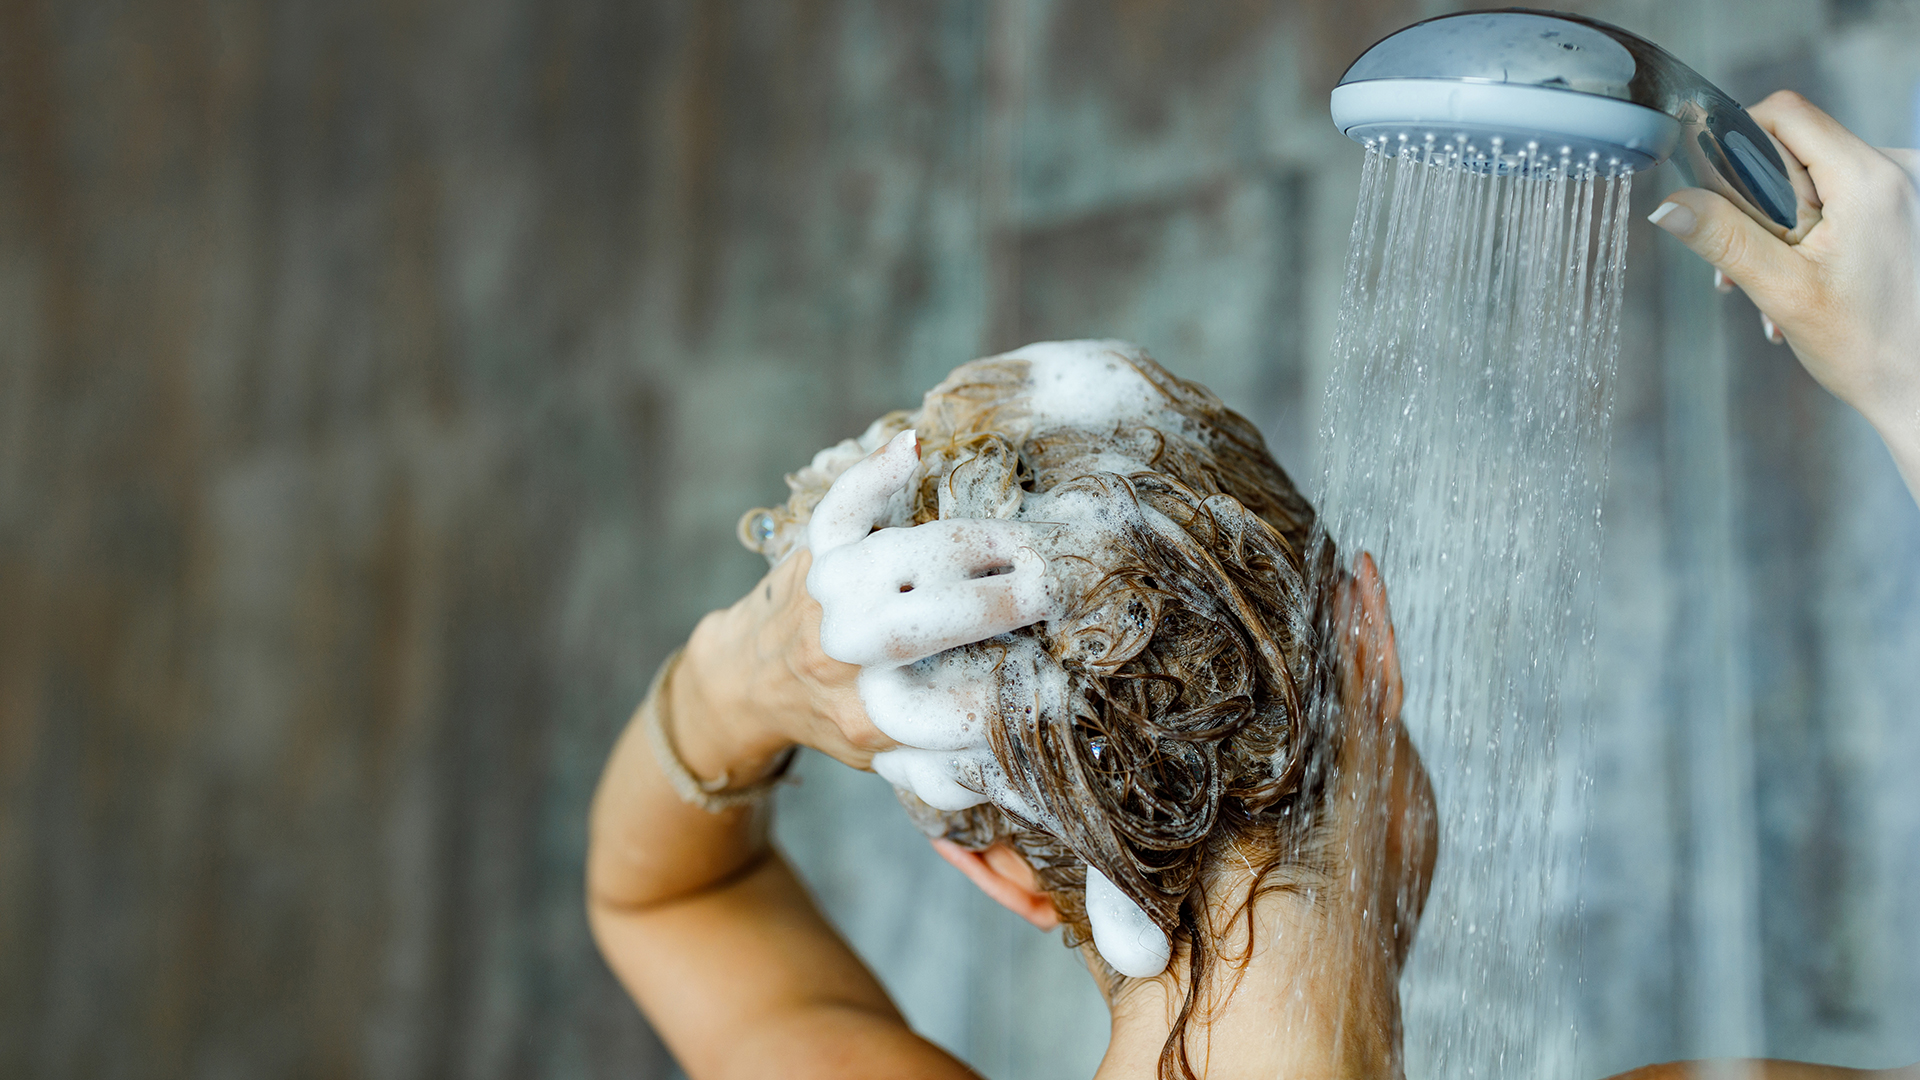 Las personas con afecciones dermatológicas o hipersensibilidad a ciertos químicos, debe consultar las indicaciones de lavado con su médico (Getty Images)